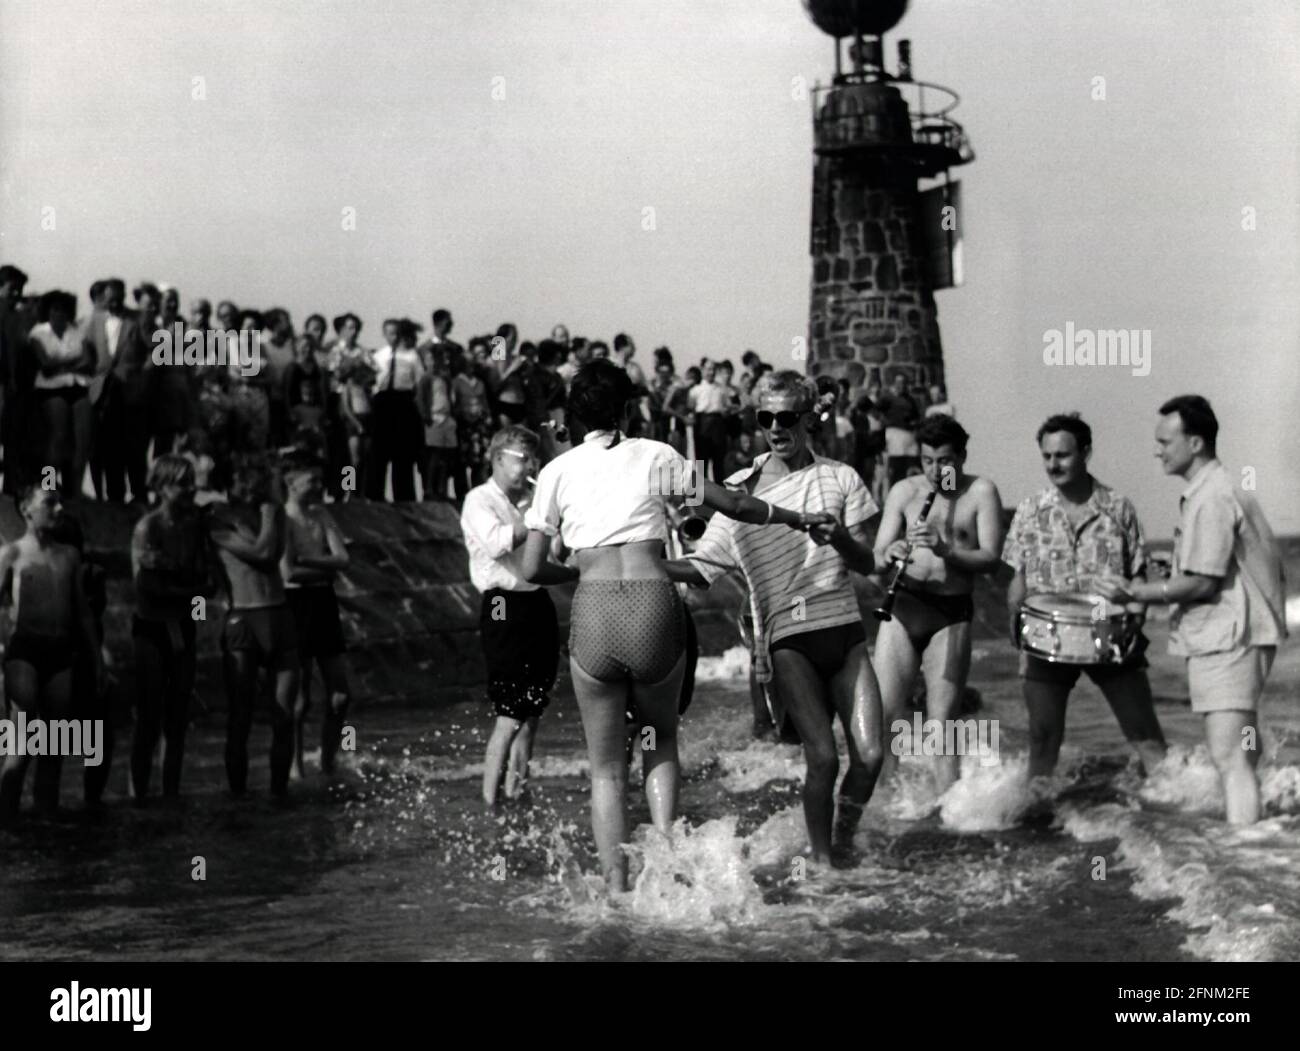 Vacanze, sport / giochi, festa in spiaggia, ballo adolescenti in acqua, circa anni '60, DIRITTI AGGIUNTIVI-CLEARANCE-INFO-NON-DISPONIBILE Foto Stock